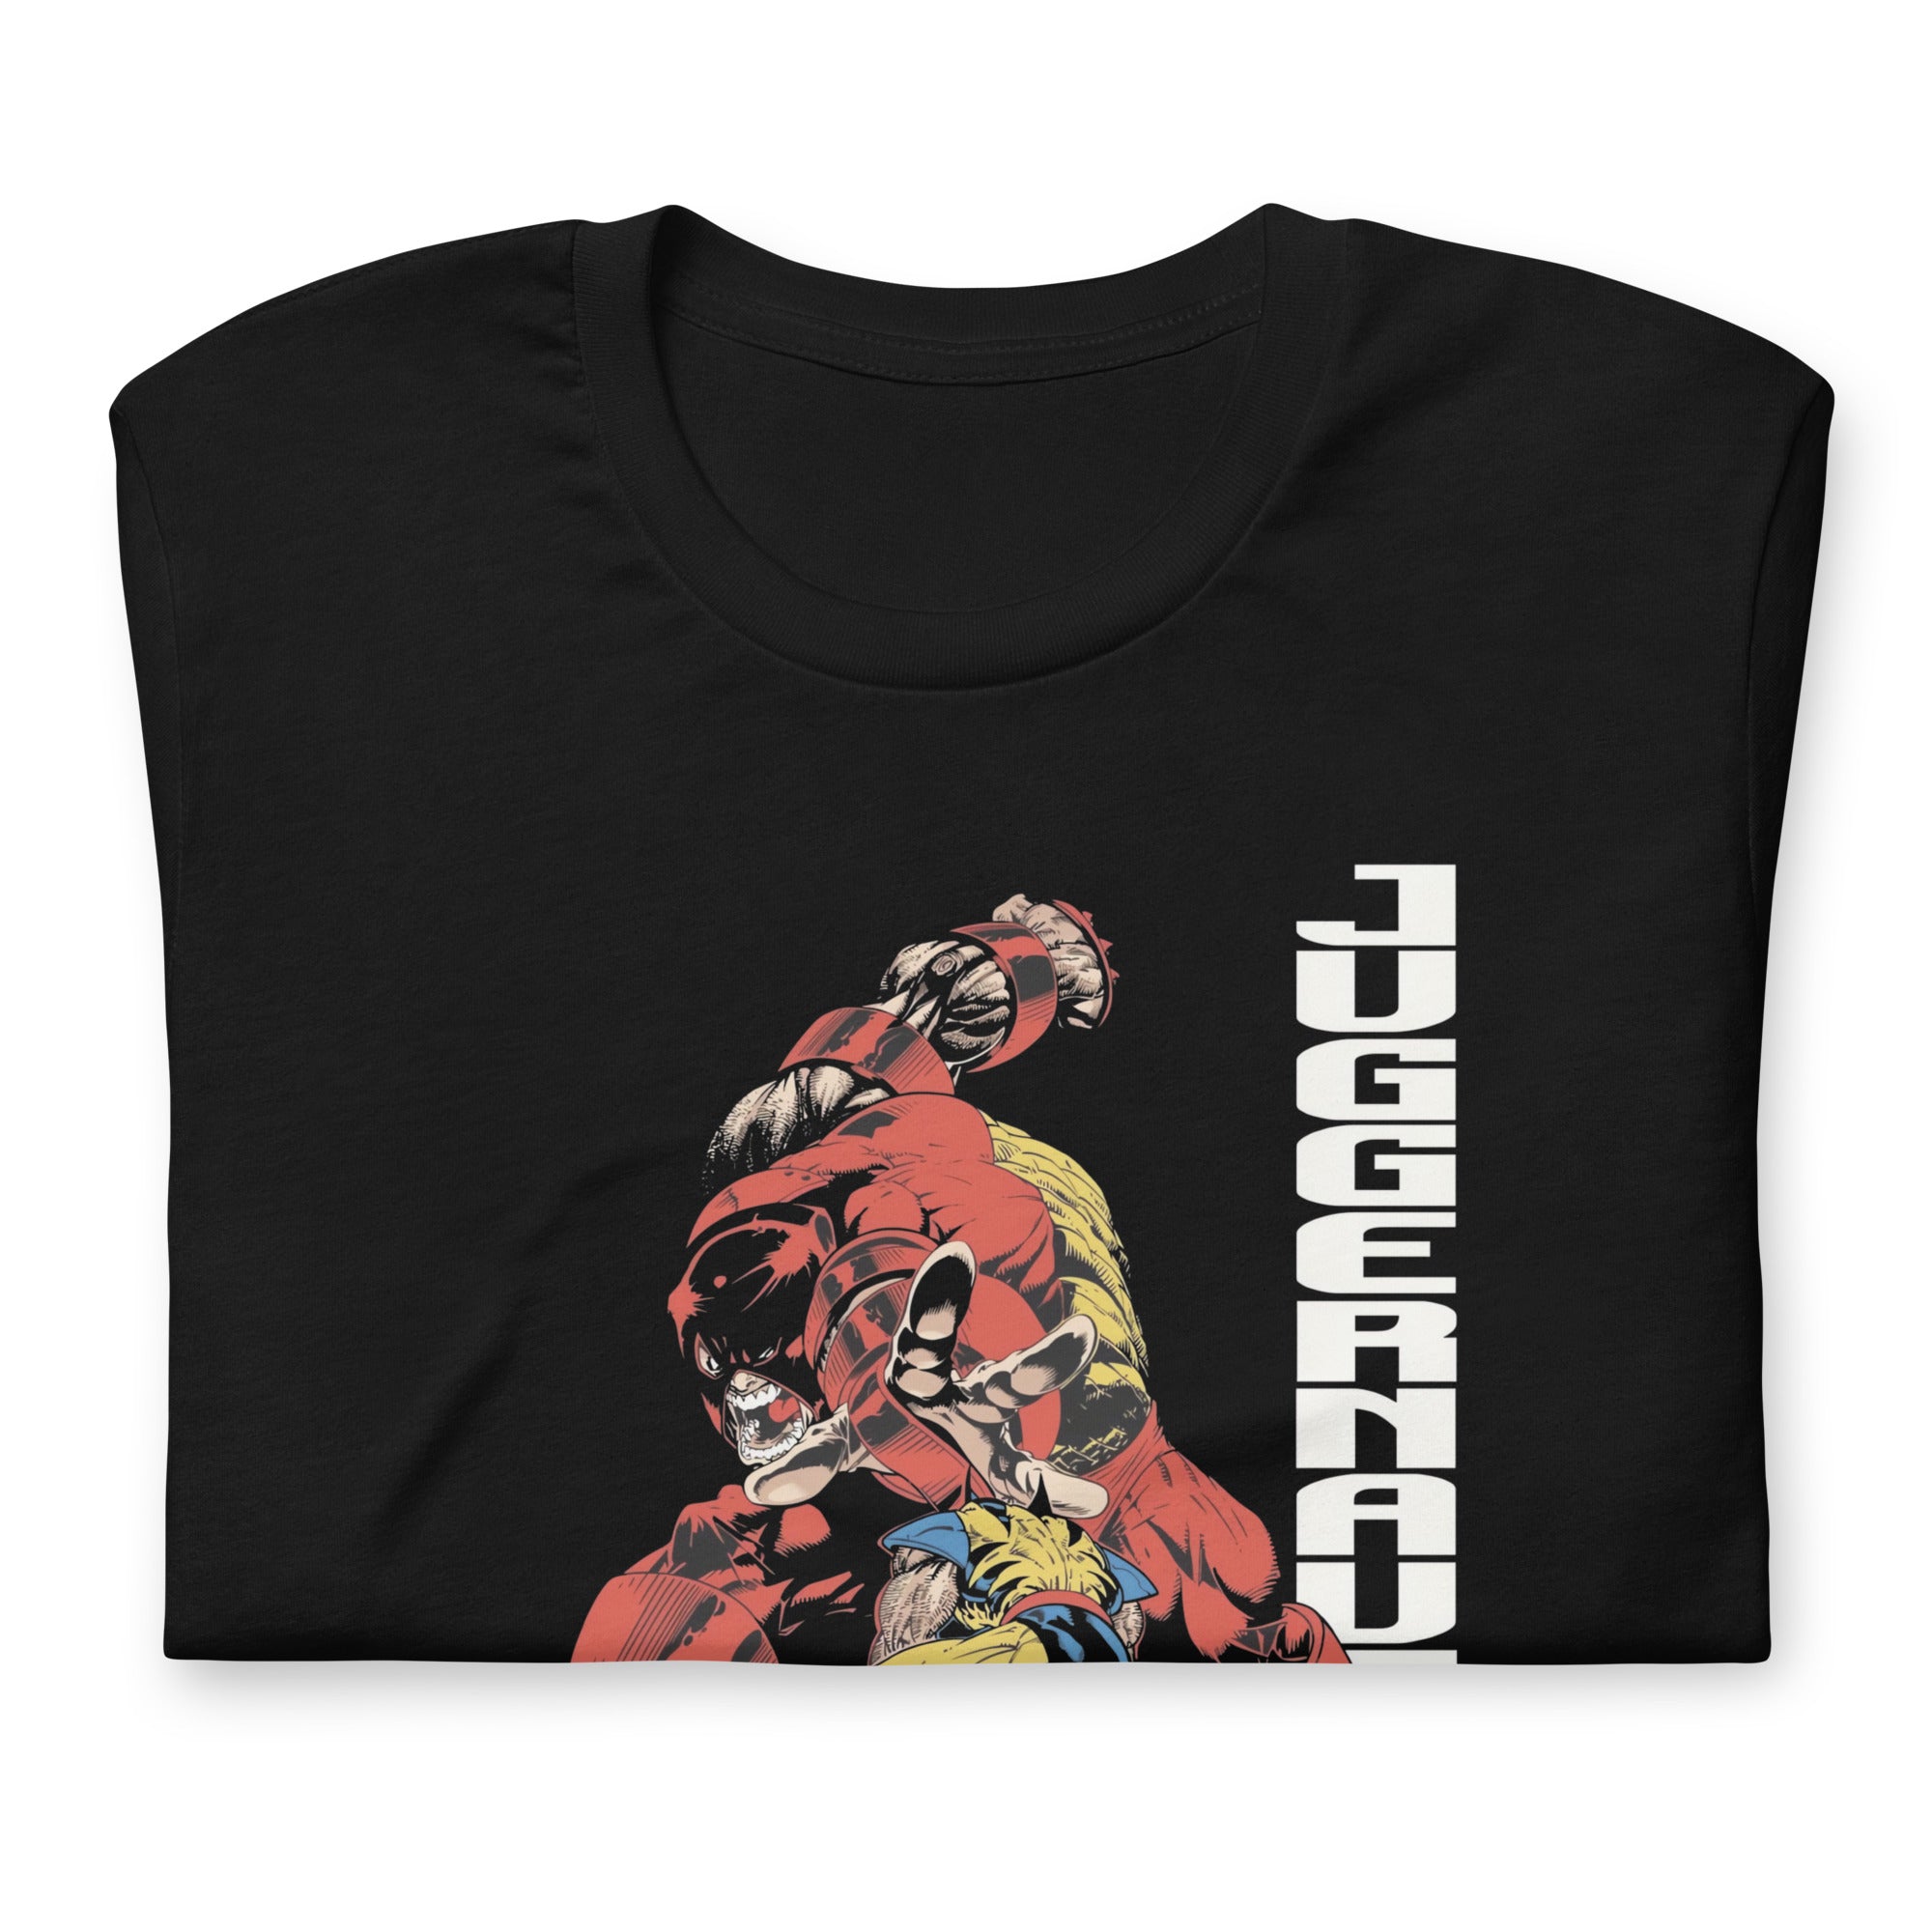 ¡Compra el mejor merchandising en Superstar! Encuentra diseños únicos y de alta calidad, Playera Wolverine vs Juggernaut